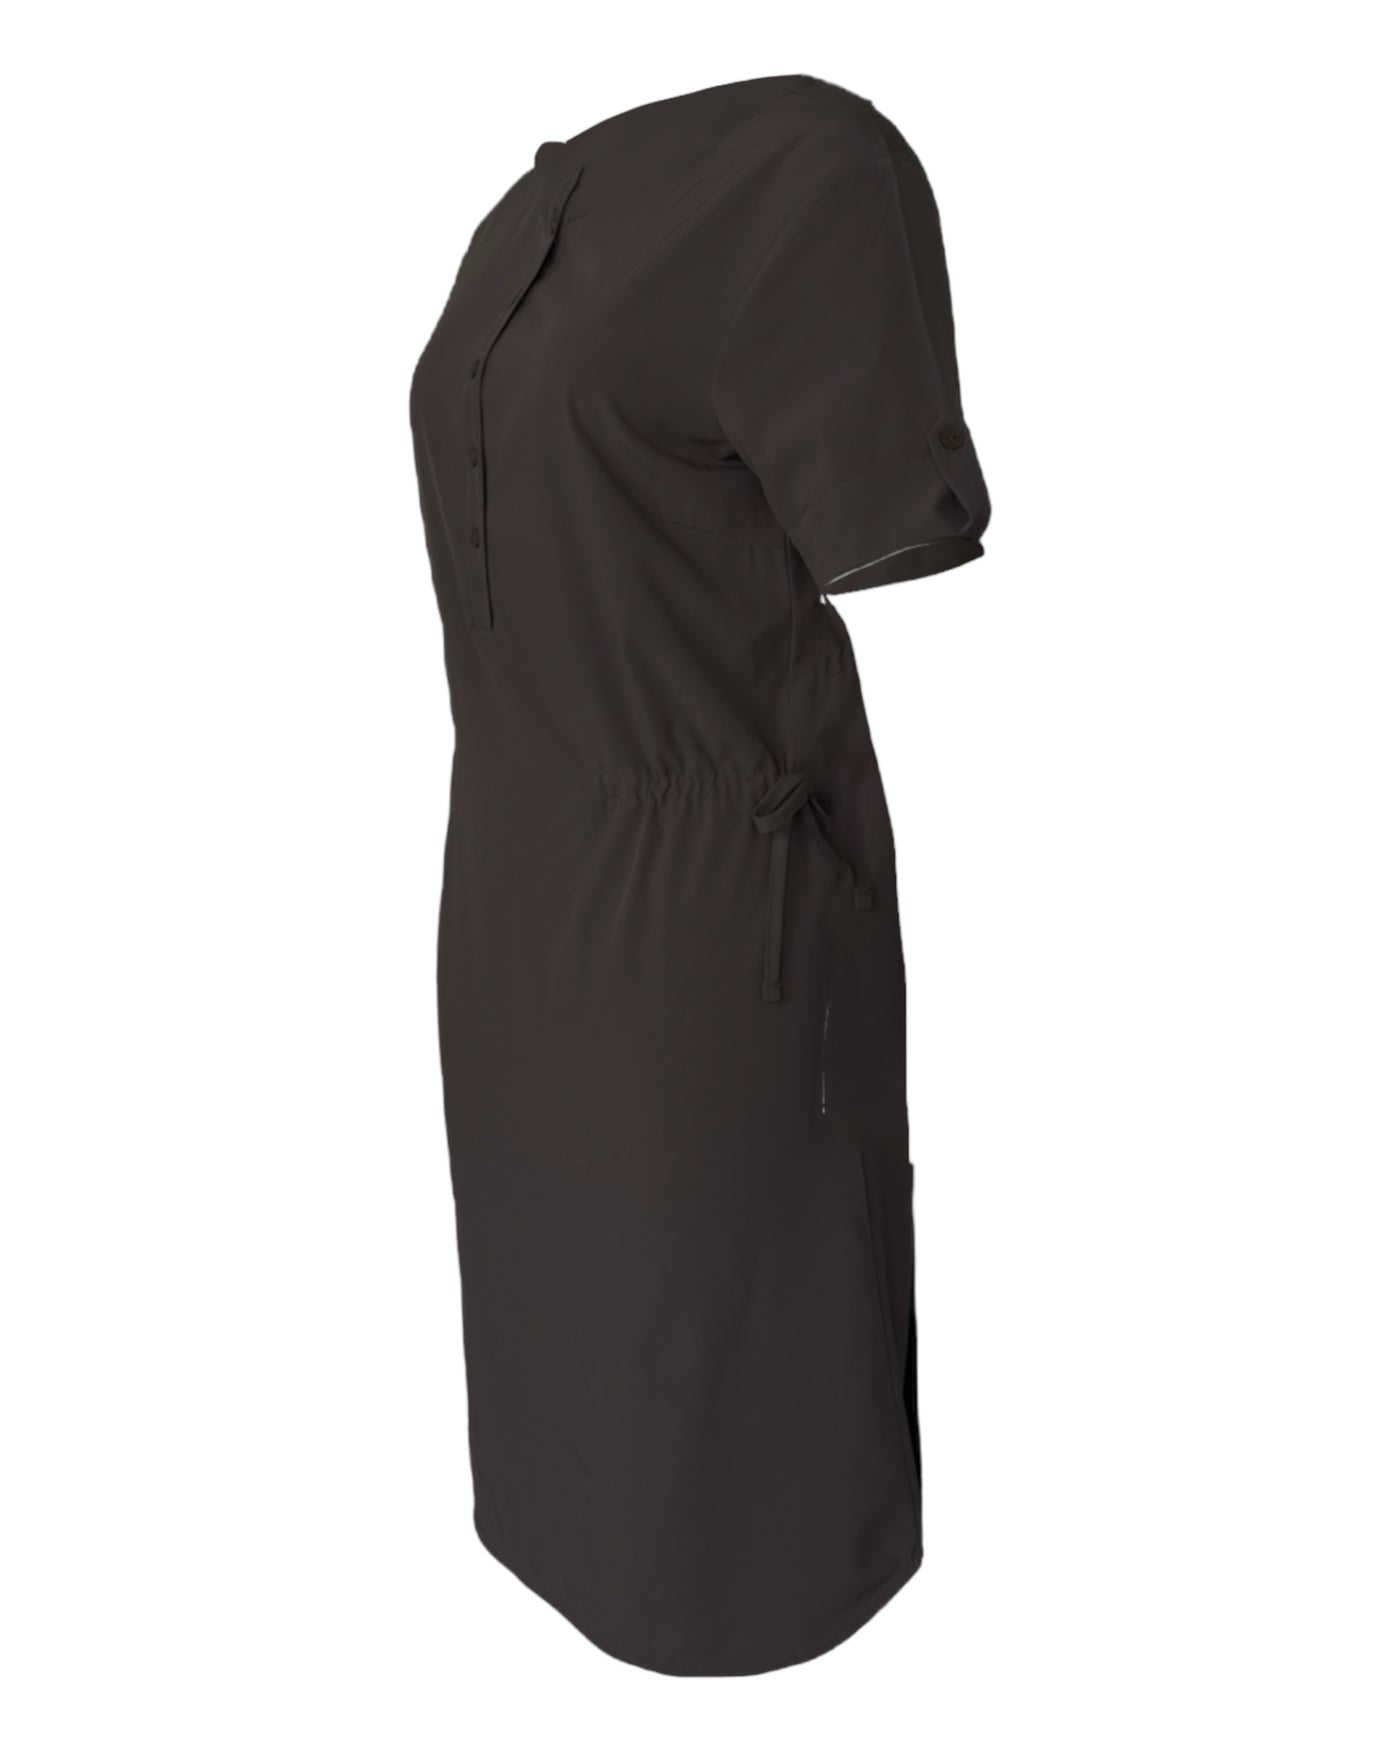 Robe taupe pour femme avec des manches courtes, extensible, légère et confortable avec cordons d'ajustements. Idéale pour le voyage